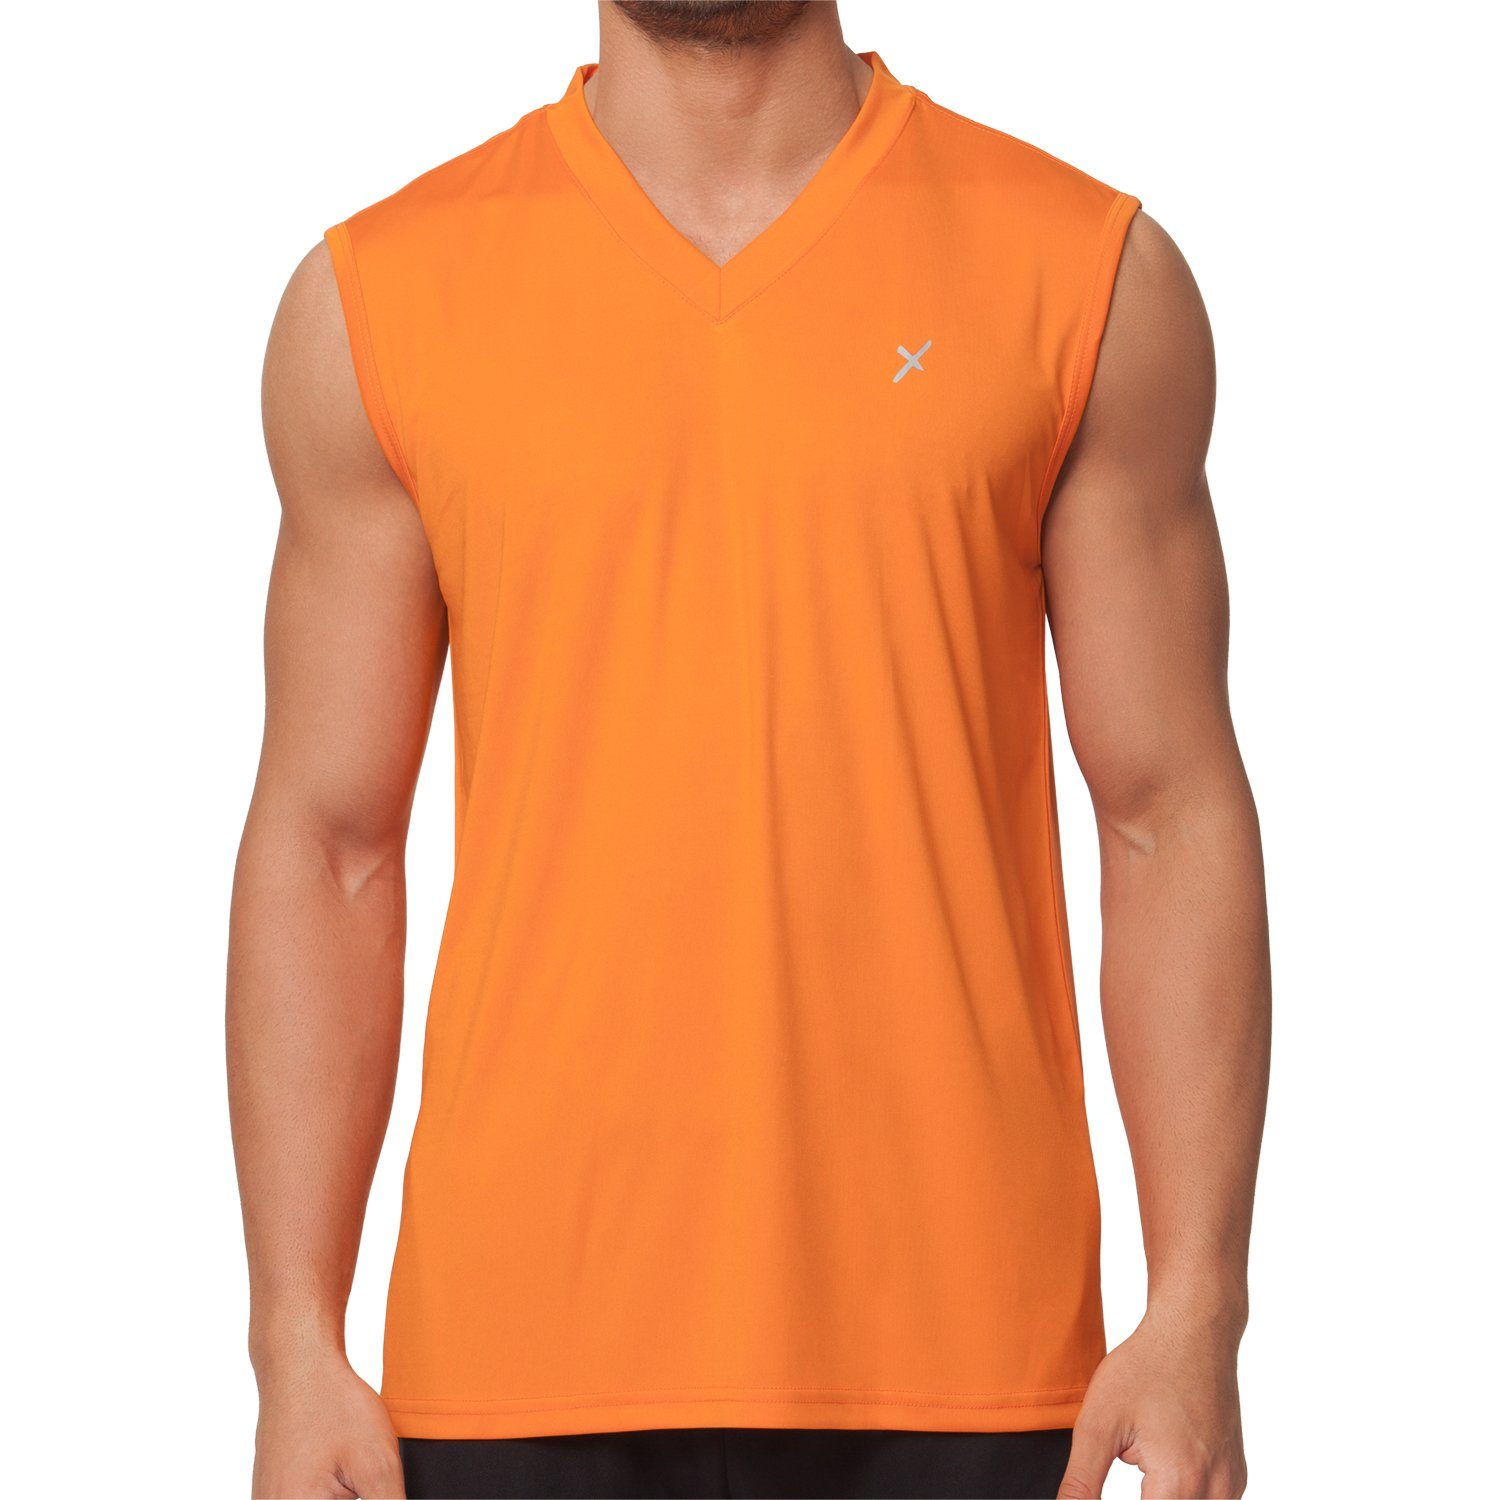 Herren Shirt CFLEX Trainingsshirt Sportswear Fitness Muscle-Shirt Sport Collection Orange